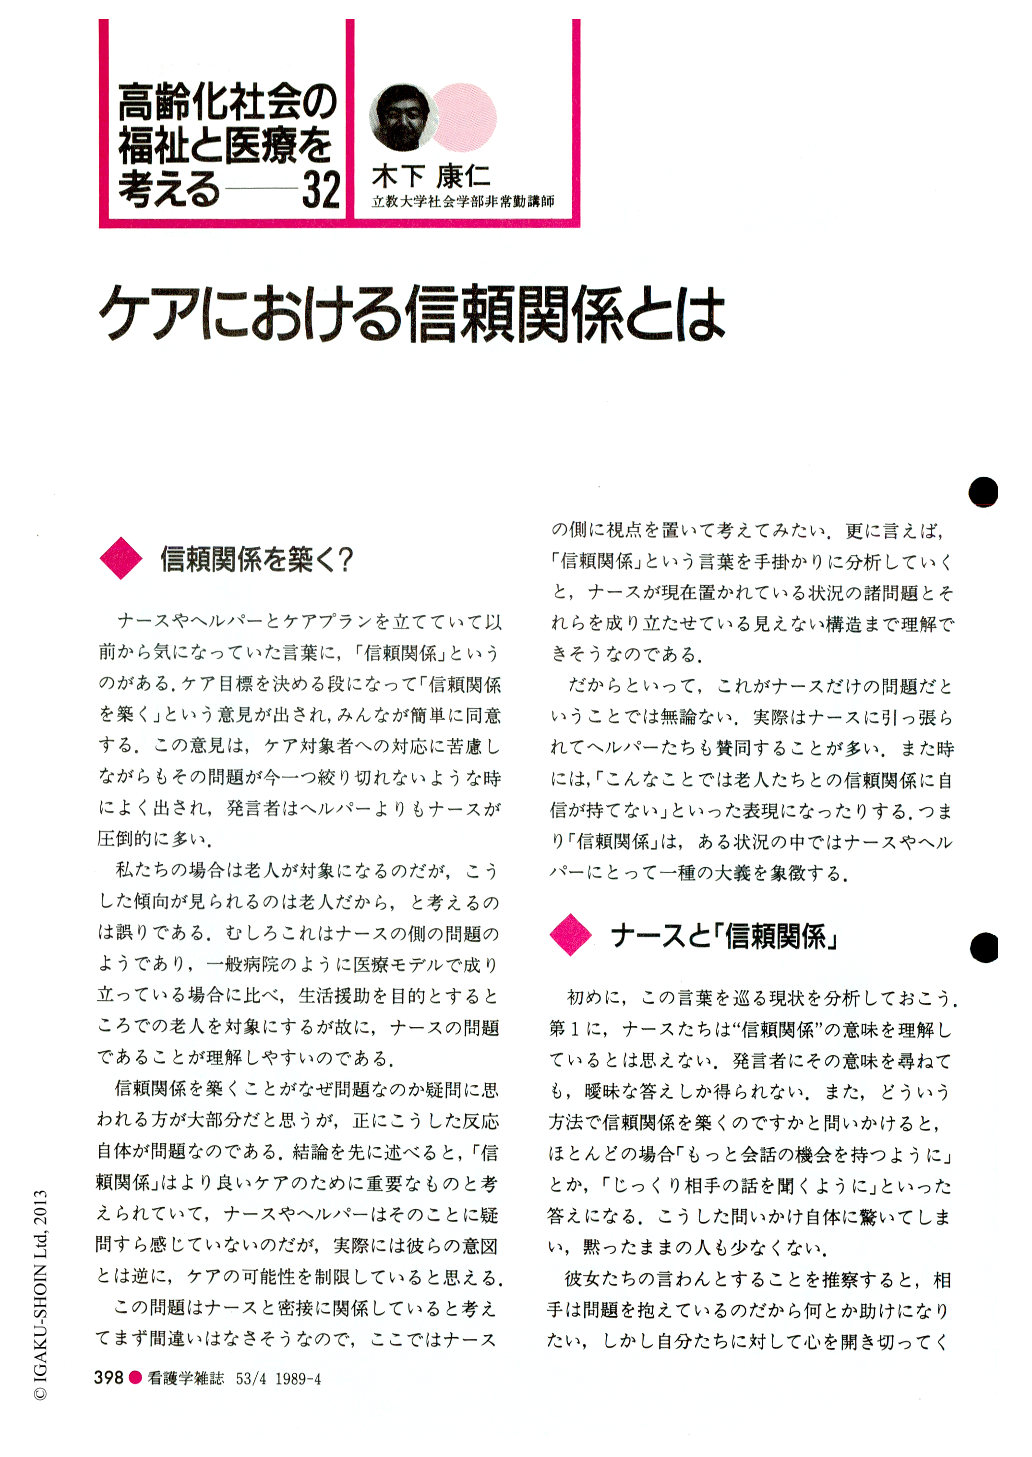 ケアにおける信頼関係とは (看護学雑誌 53巻4号) | 医書.jp